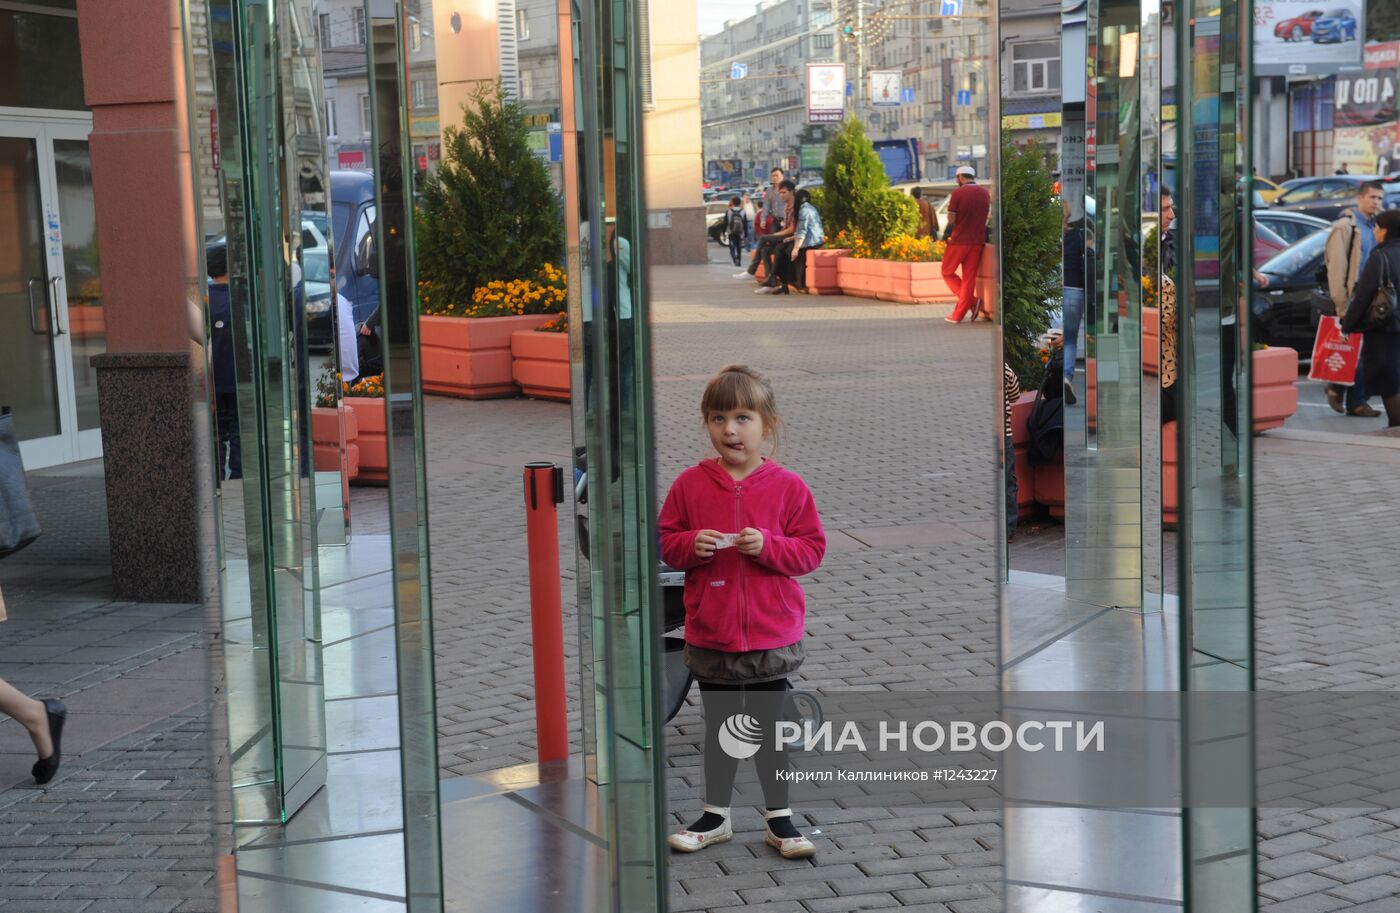 Зеркальная инсталляция "Торт" на Земляном Валу в Москве